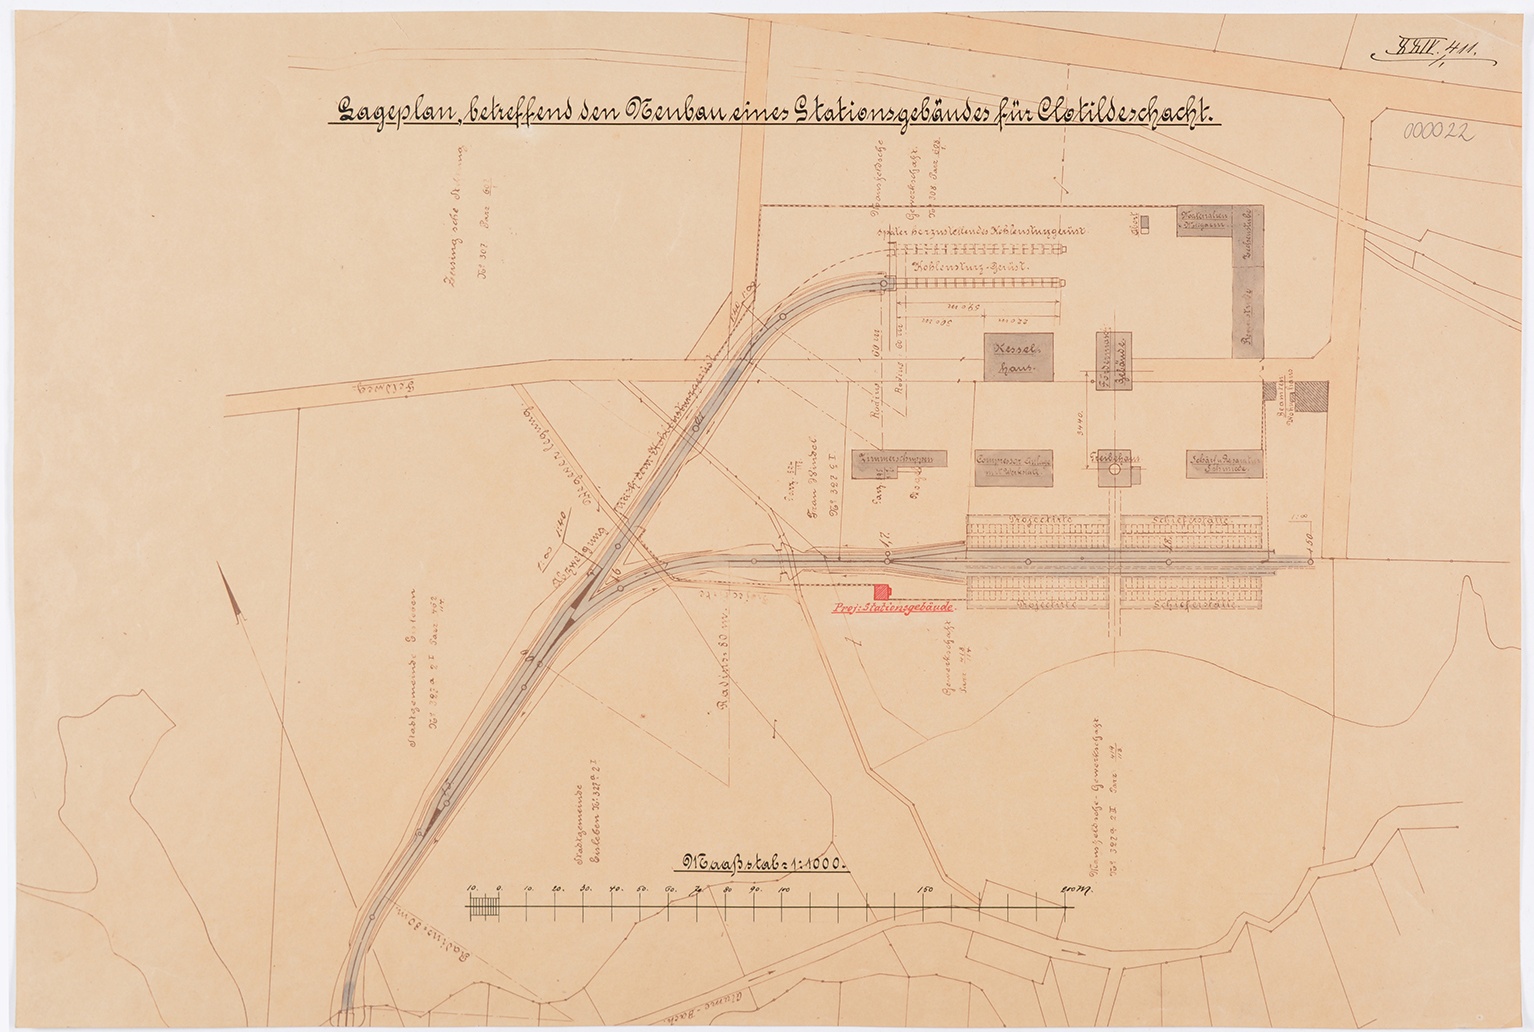 Lageplan betreffend den Neubau eines Stationsgebäudes für Clotildeschacht. (Mansfeld-Museum im Humboldt-Schloss CC BY-NC-SA)